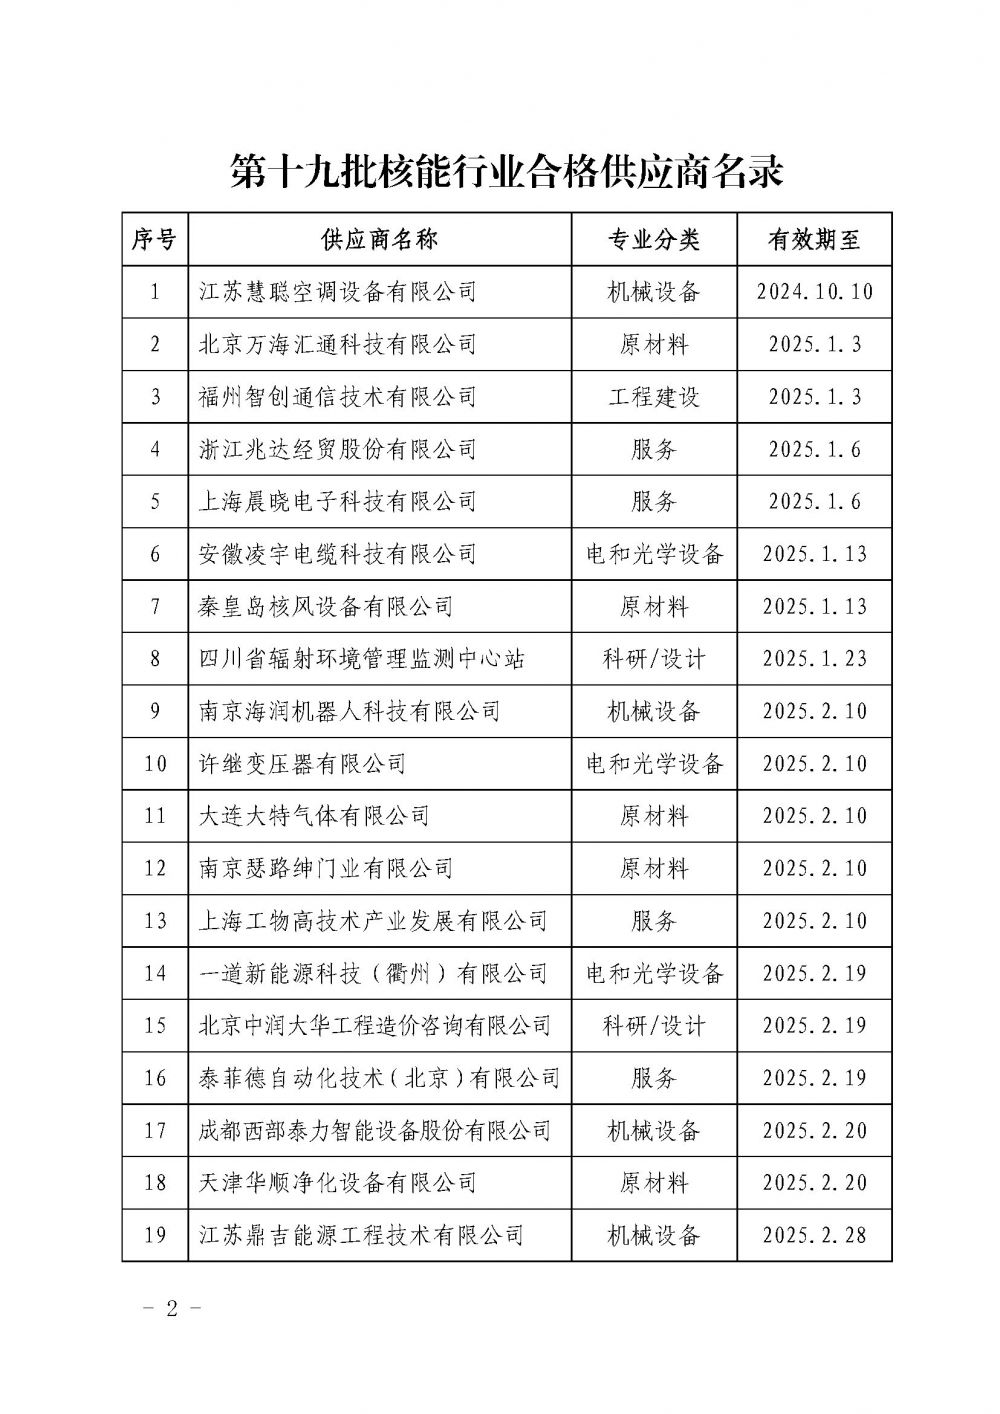 中国核能行业协会关于发布第十九批核能行业合格供应商名录的公告_页面_2.jpg